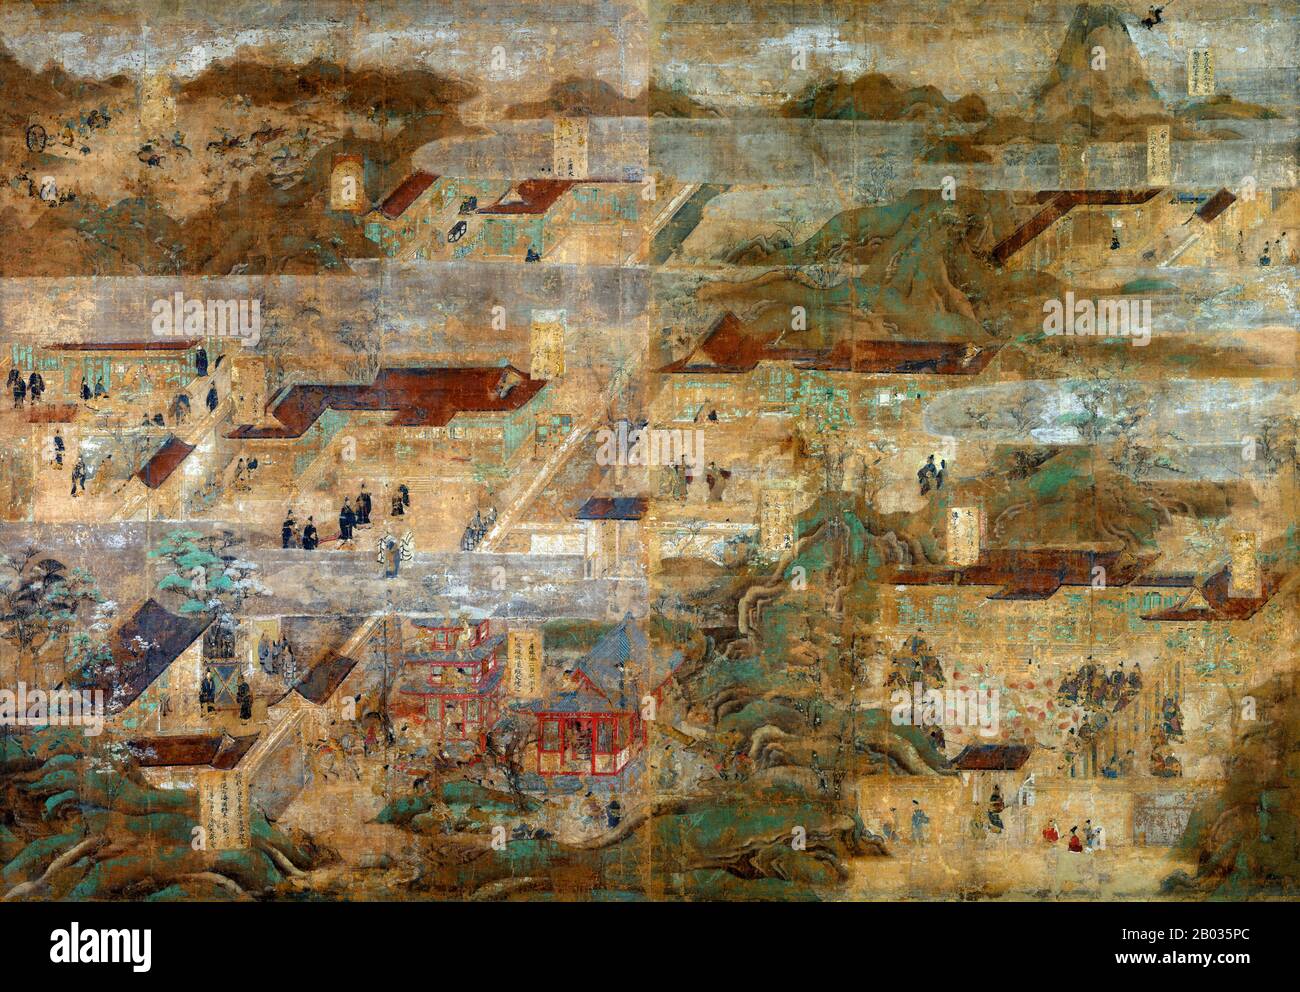 Cet ensemble de peintures est la plus ancienne et la plus grande biographie illustrée du prince Regent Shotoku (574-622). Il décrit les lieux et les événements liés au récit traditionnel de sa vie, découlant de la vénération du prince qui a commencé dans la période Nara (710-794). Ces peintures étaient à l'origine sur des portes fixes qui ordaient la salle D'Exposition dans la Cité de l'est du Temple Horyu-ji. Ils ont été remountés comme écrans autonomes dans la période Edo (1615-1868), et ces derniers temps ont été remountés sur dix panneaux. Les archives nous disent que Hata no Chitei, un artiste de la province de Settsu (presen Banque D'Images